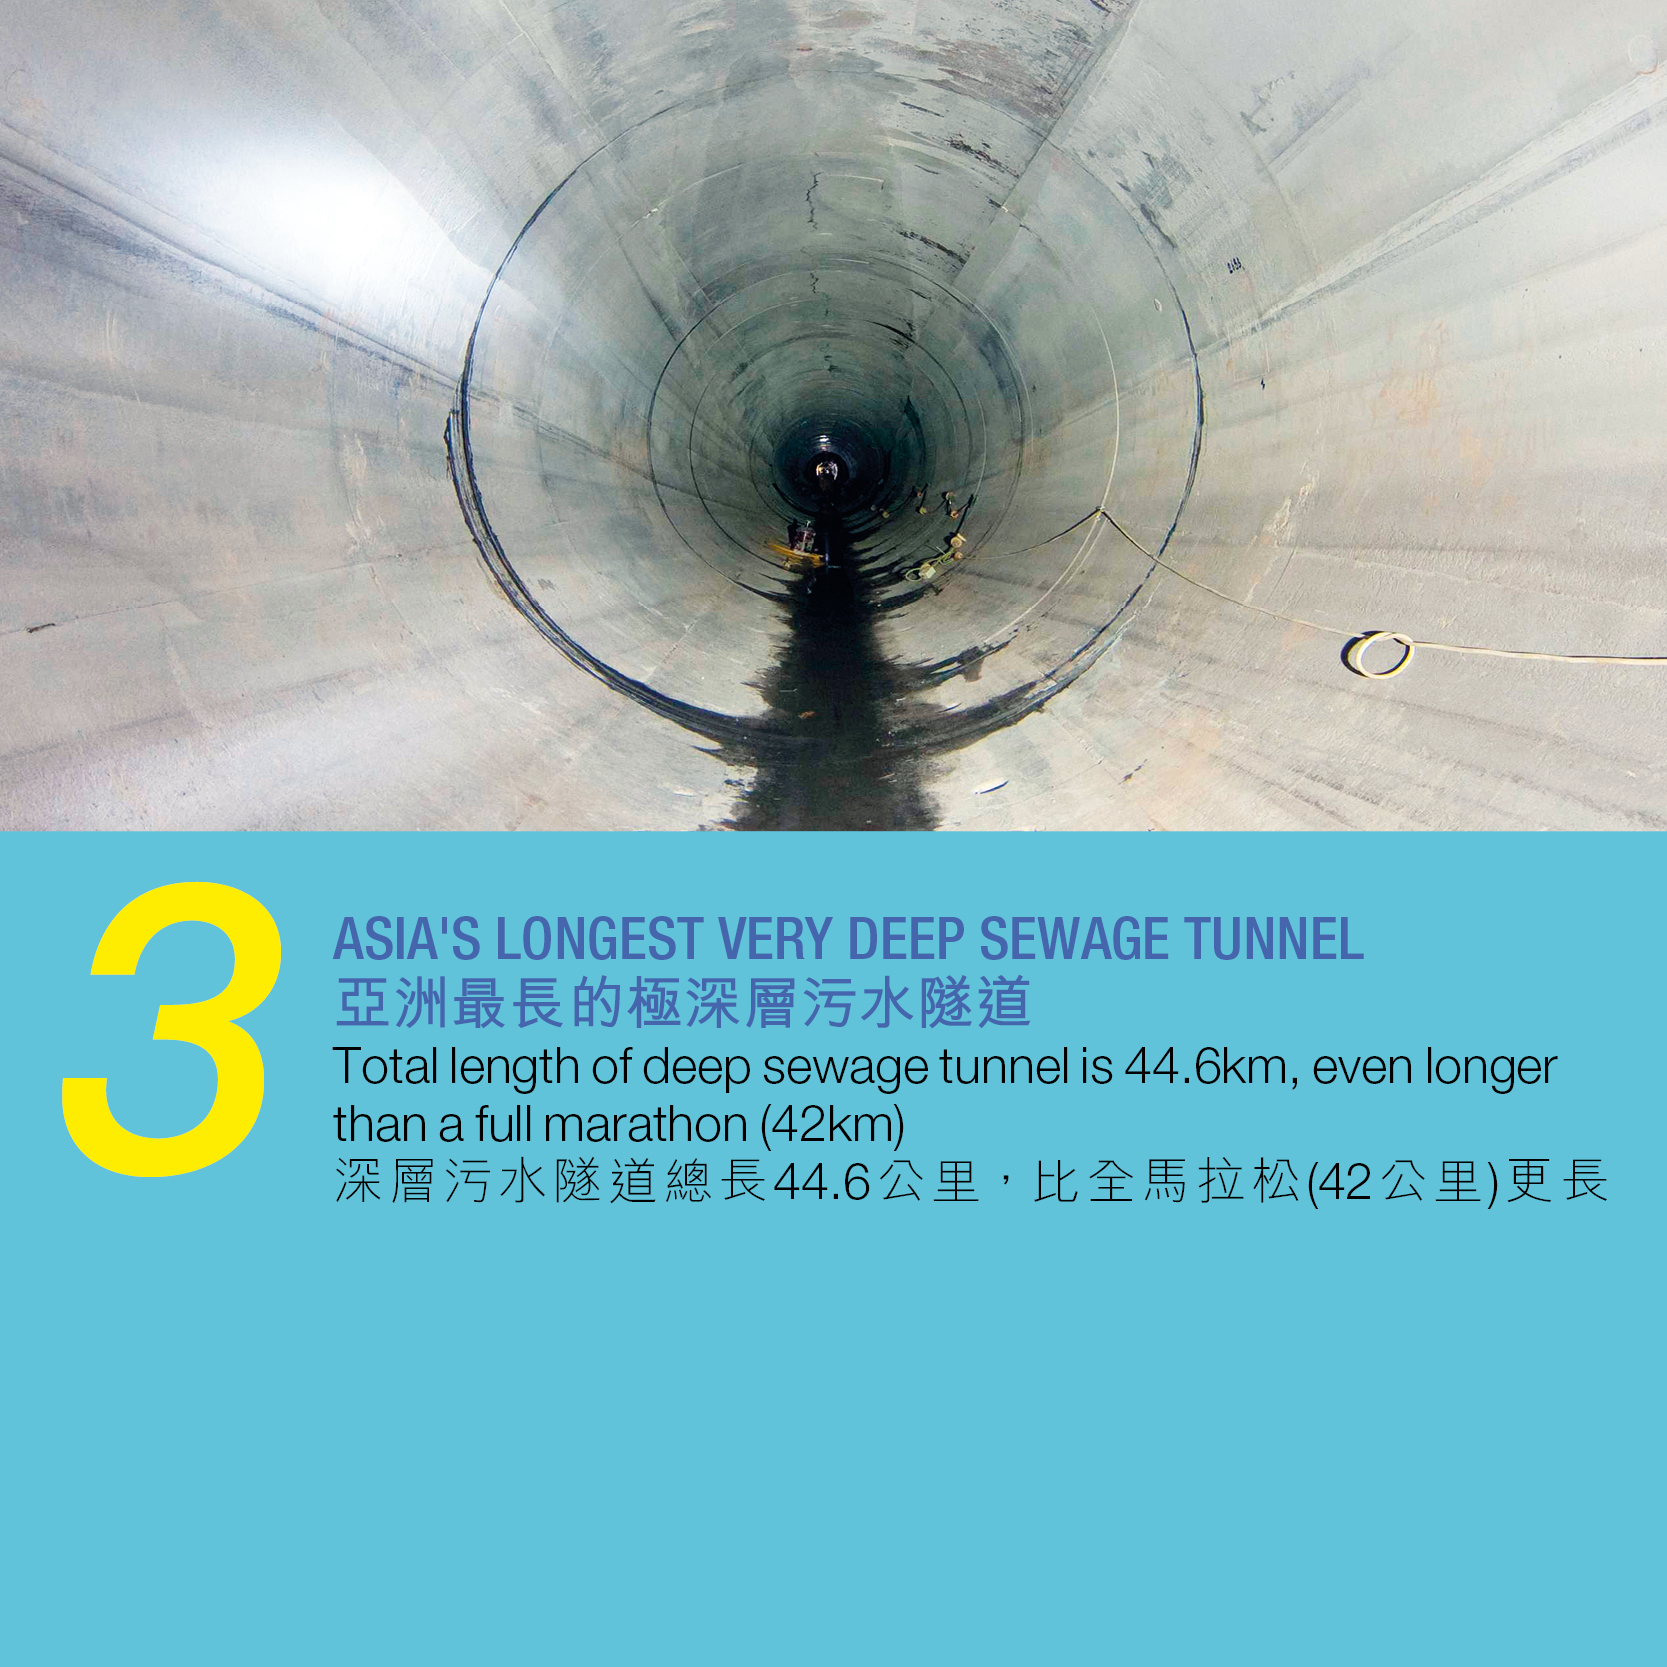 3. 亞洲最長的極深層污水隧道 深層污水隧道總長44.6公里，比全馬拉松(42公里)更長